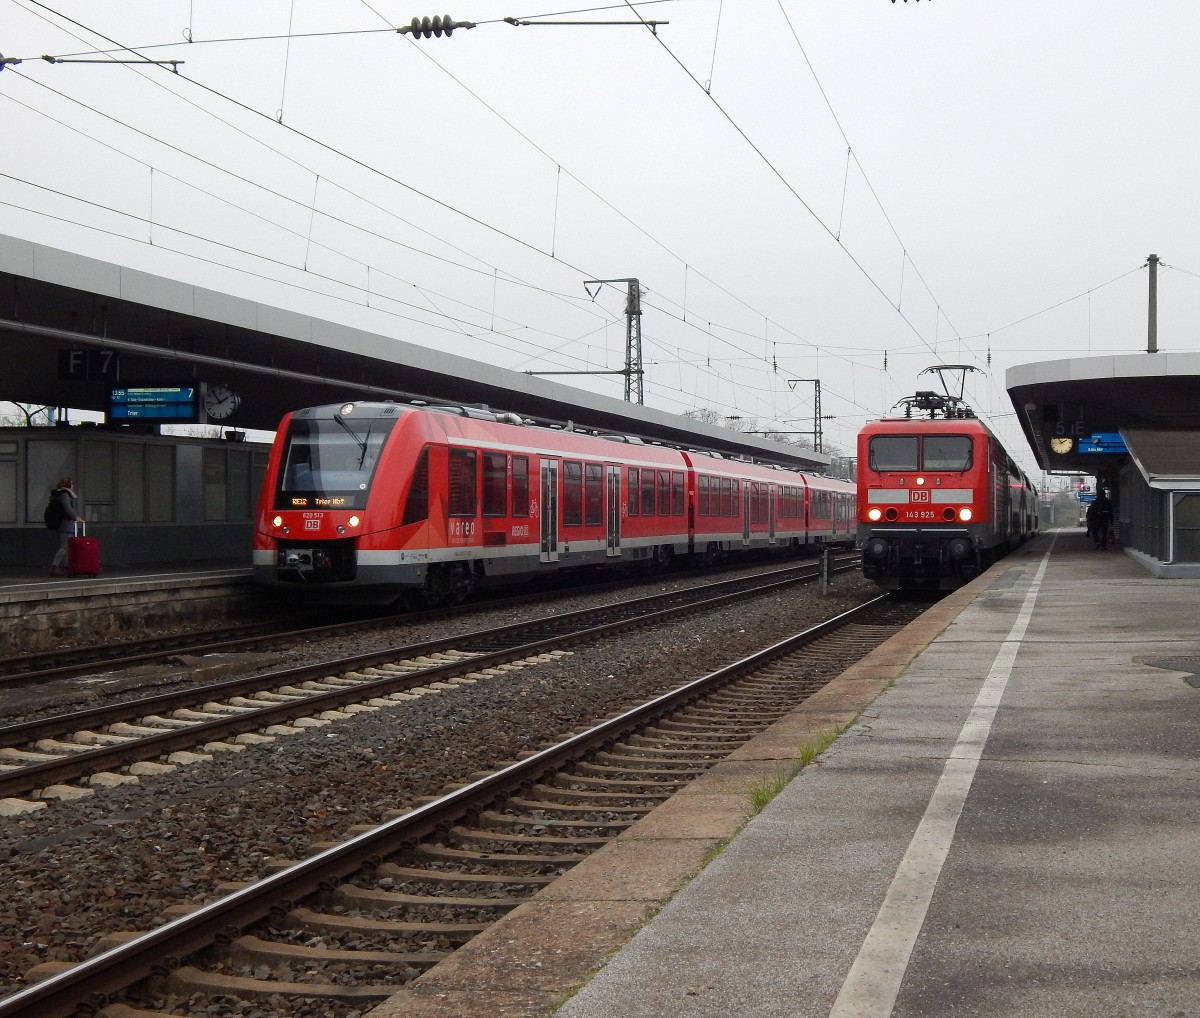 Links steht der RE12 nach Trier während die RB27 nach Köln HBF auf Ausfahrt wartet.

Köln 30.11.2014